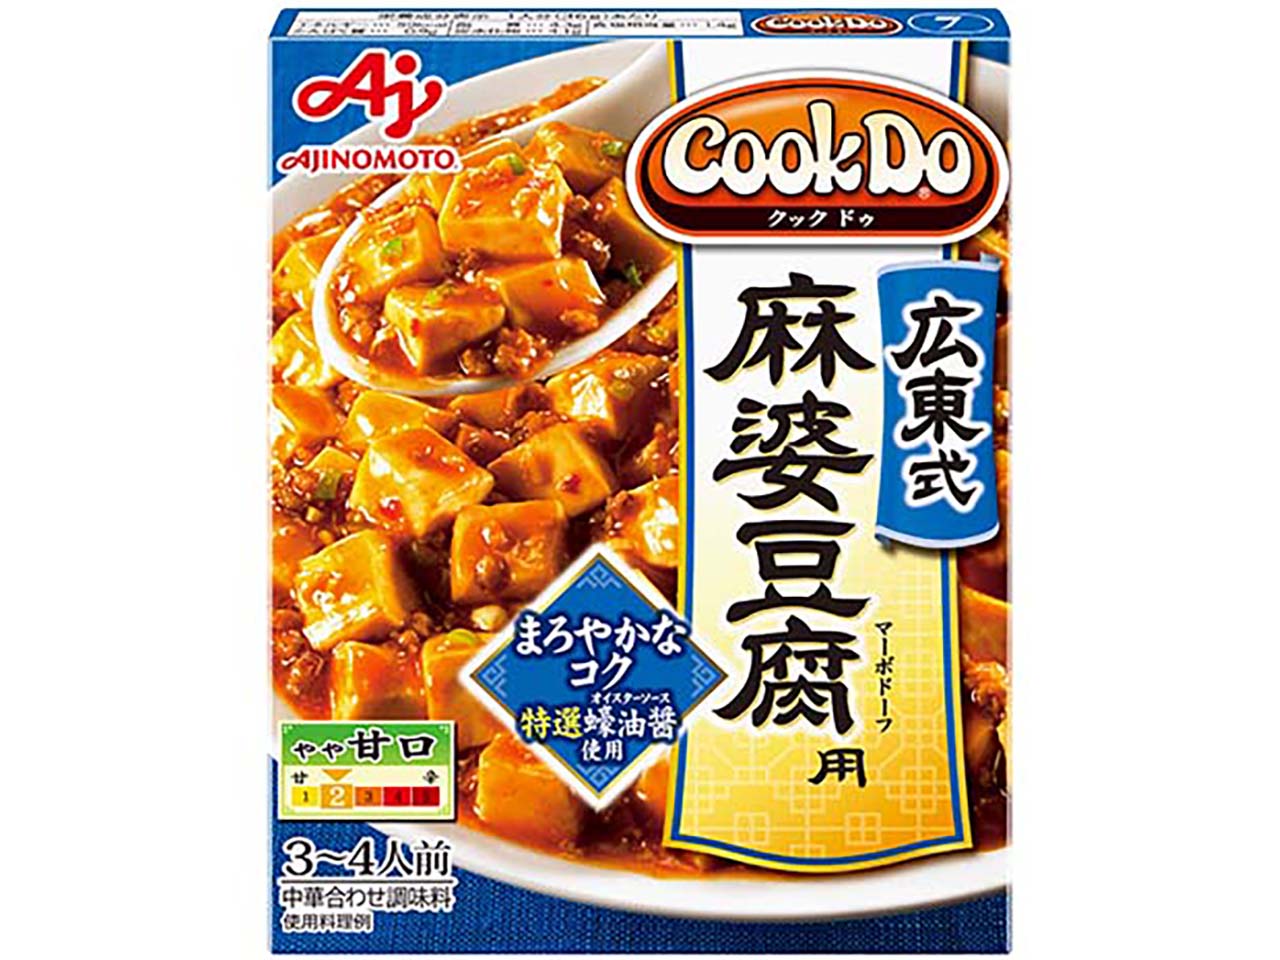 「Cook Do」広東式麻婆豆腐用